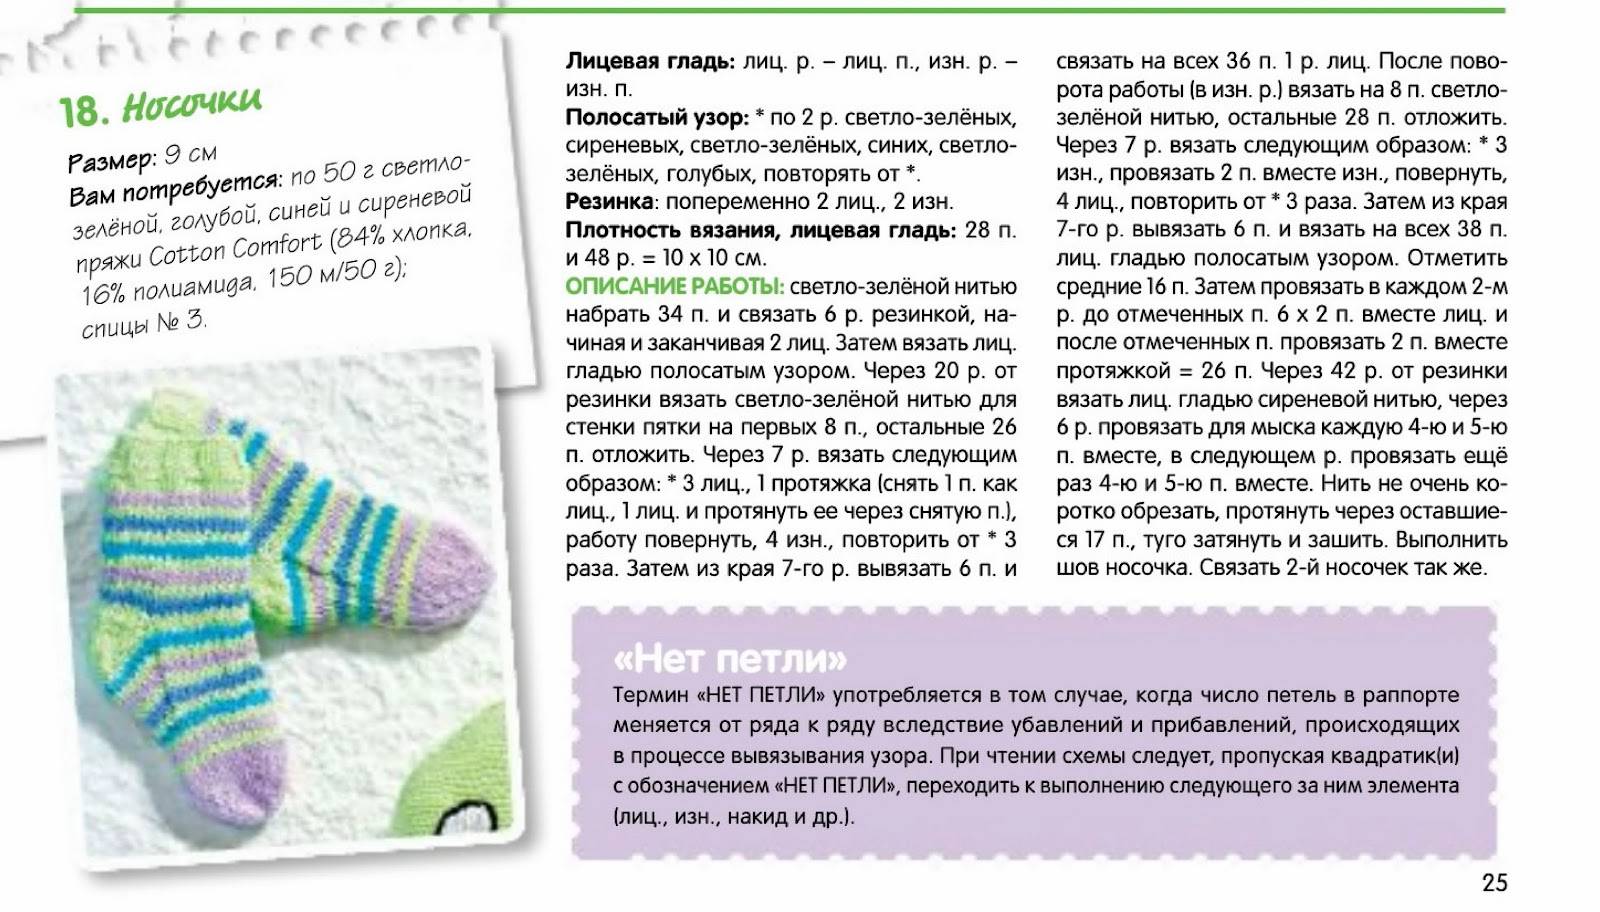 Носочки для новорожденных спицами: схемы вязания от 0 до 2 месяцев с пошаговым описанием